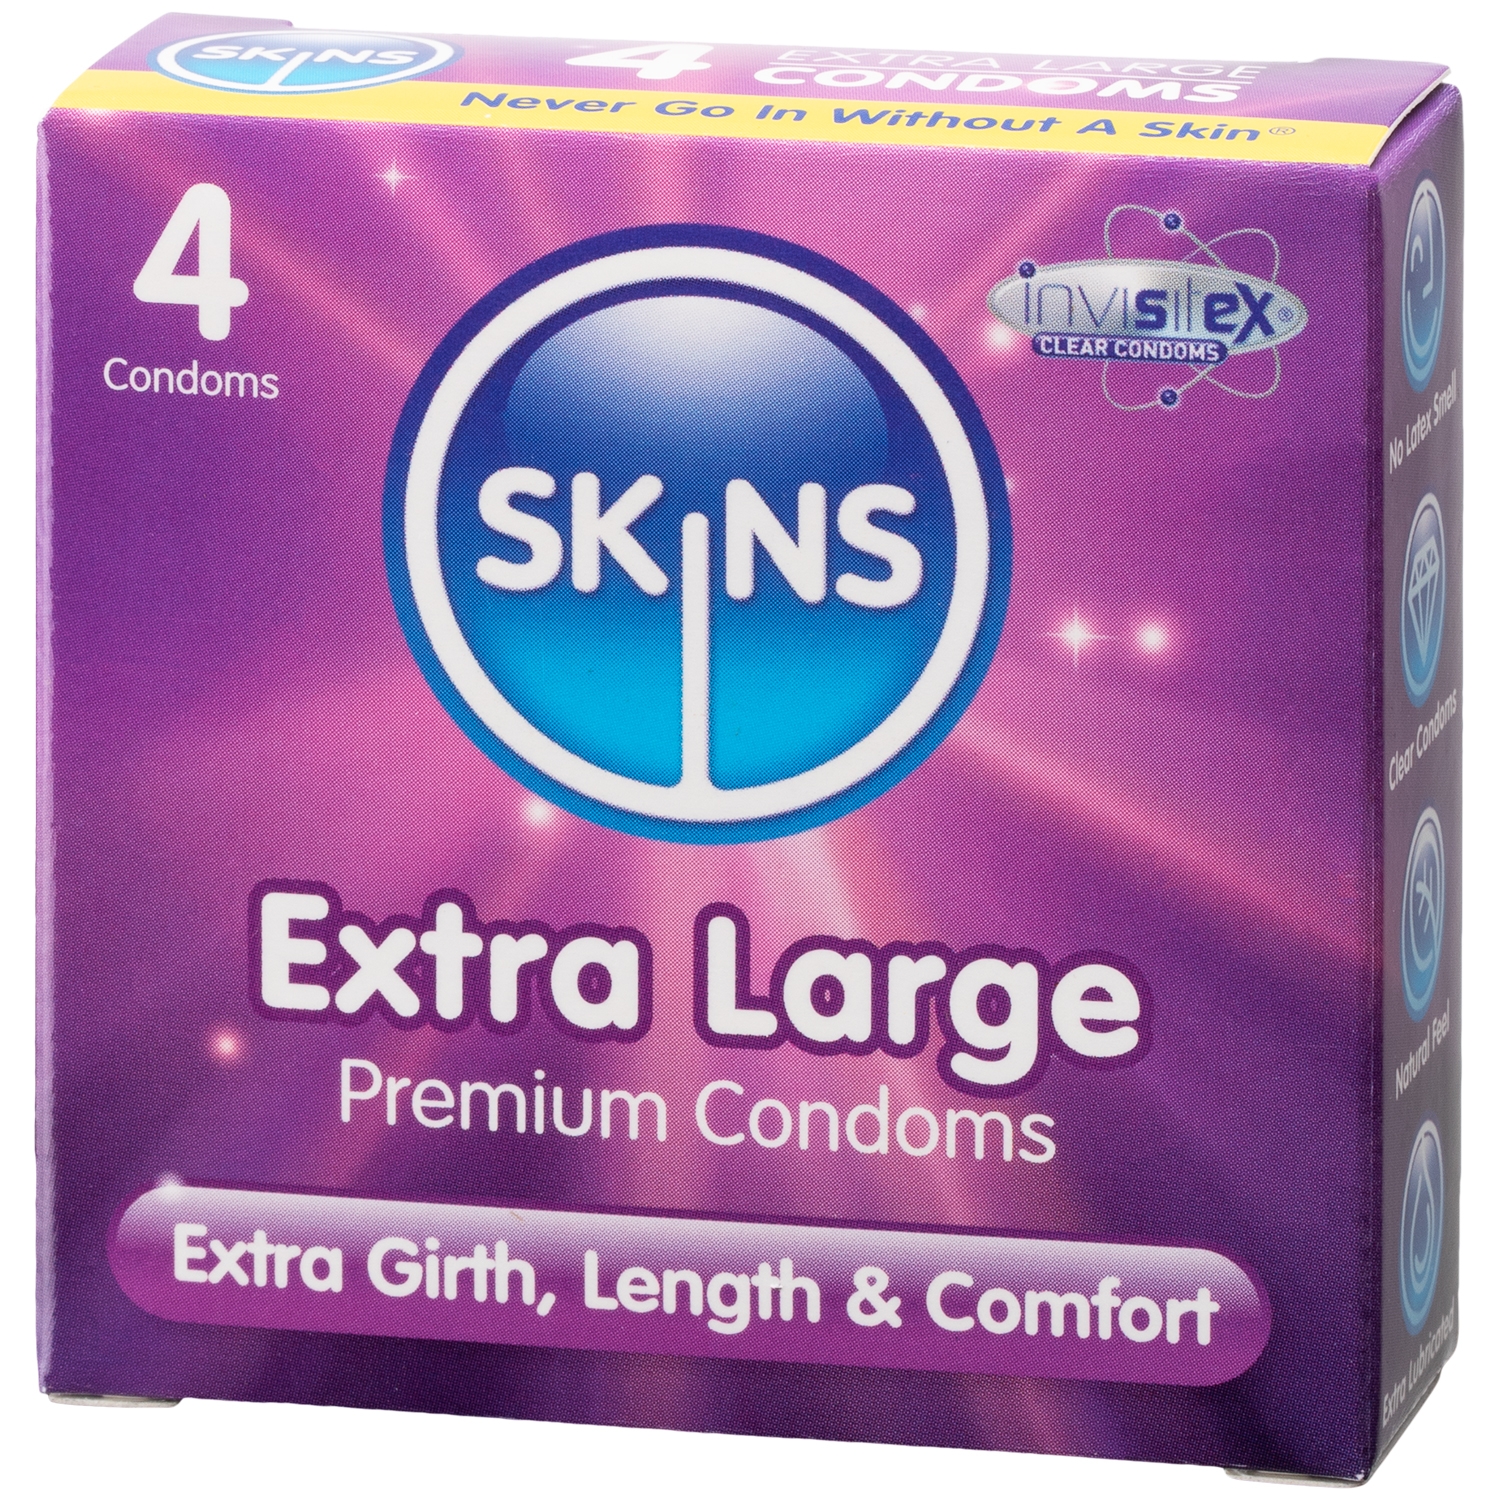 Skins Extra Large Kondomer 4 st - Klar | Tillbehör//Kondomer//Män//Bättre Sex//Par kondomer//Stora Kondomer//Vanliga Kondomer//Tunna Kondomer//Skins | Intimast